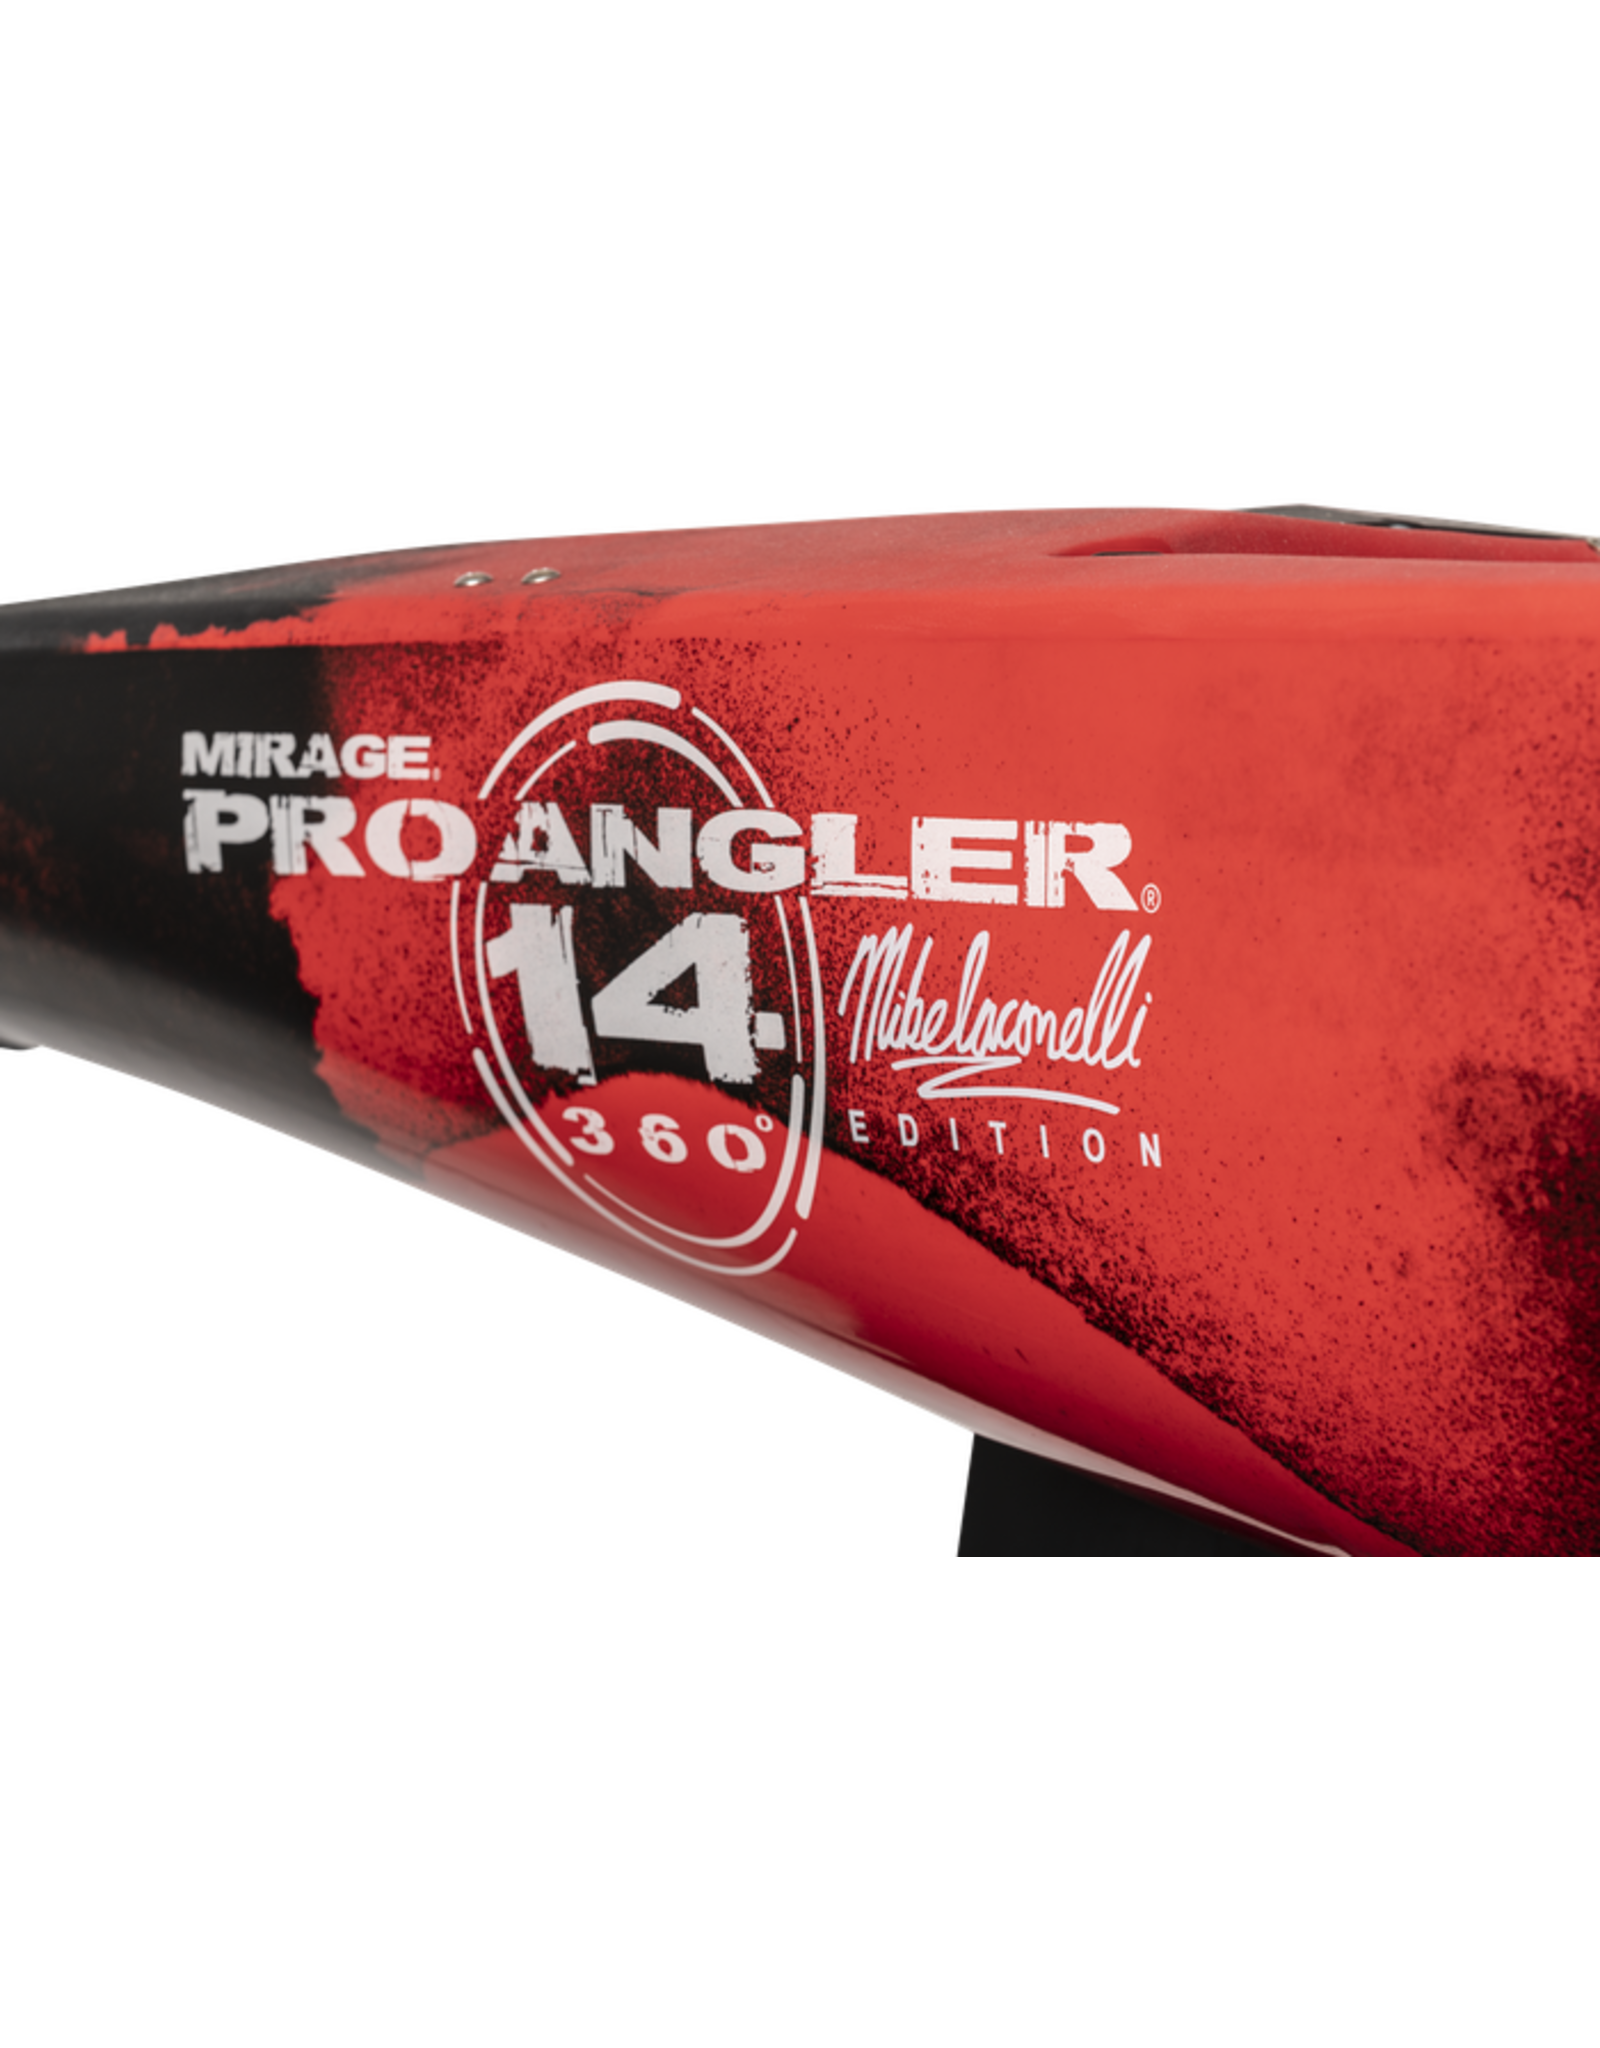 Hobie Hobie kayak Pro Angler 14 MD 360 Special Edition IKE